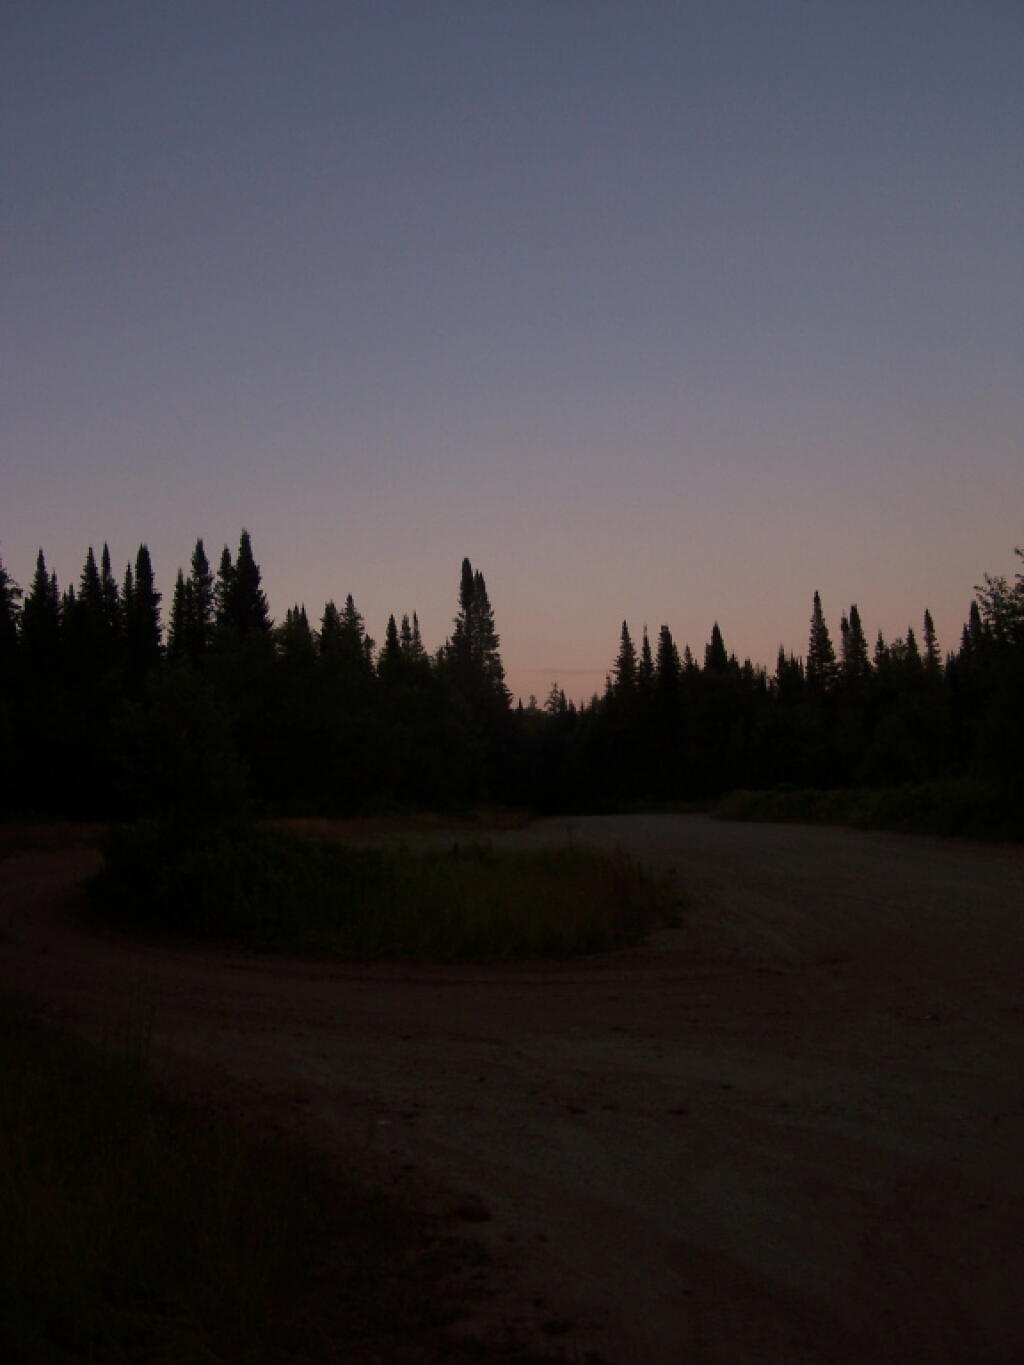 White Pines After Dark